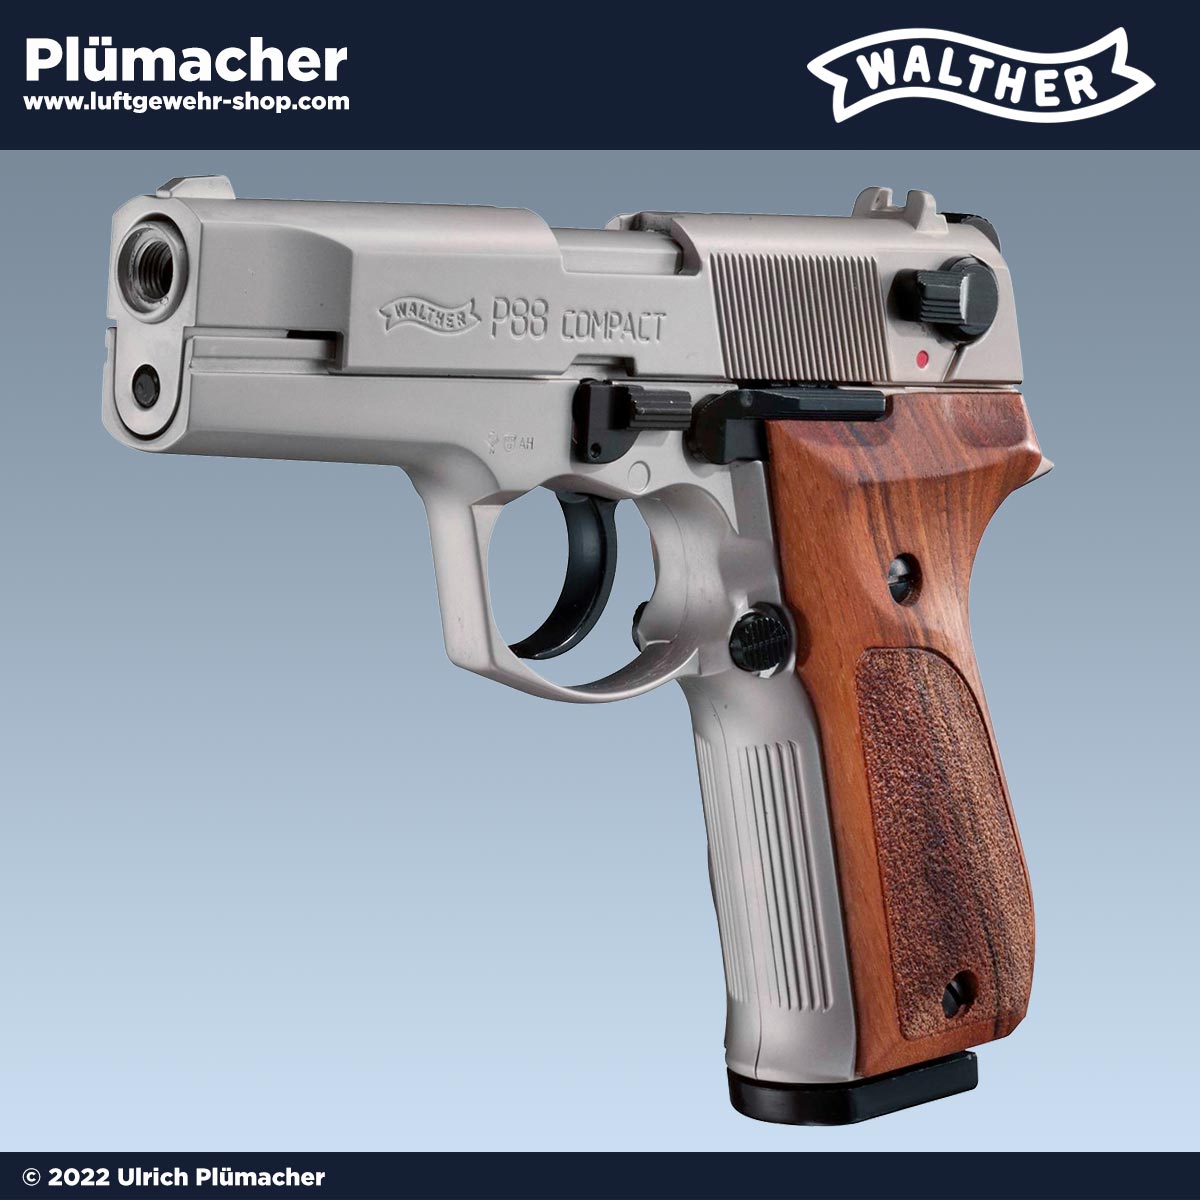 Walther Gaspistolen & Schreckschusswaffen kaufen - hier die WALTHER PPQ,  P22, P99, P88, PP. Luftgewehr-Shop - Luftgewehre, Schreckschusswaffen, CO2  Waffen, Luftpistolen kaufen